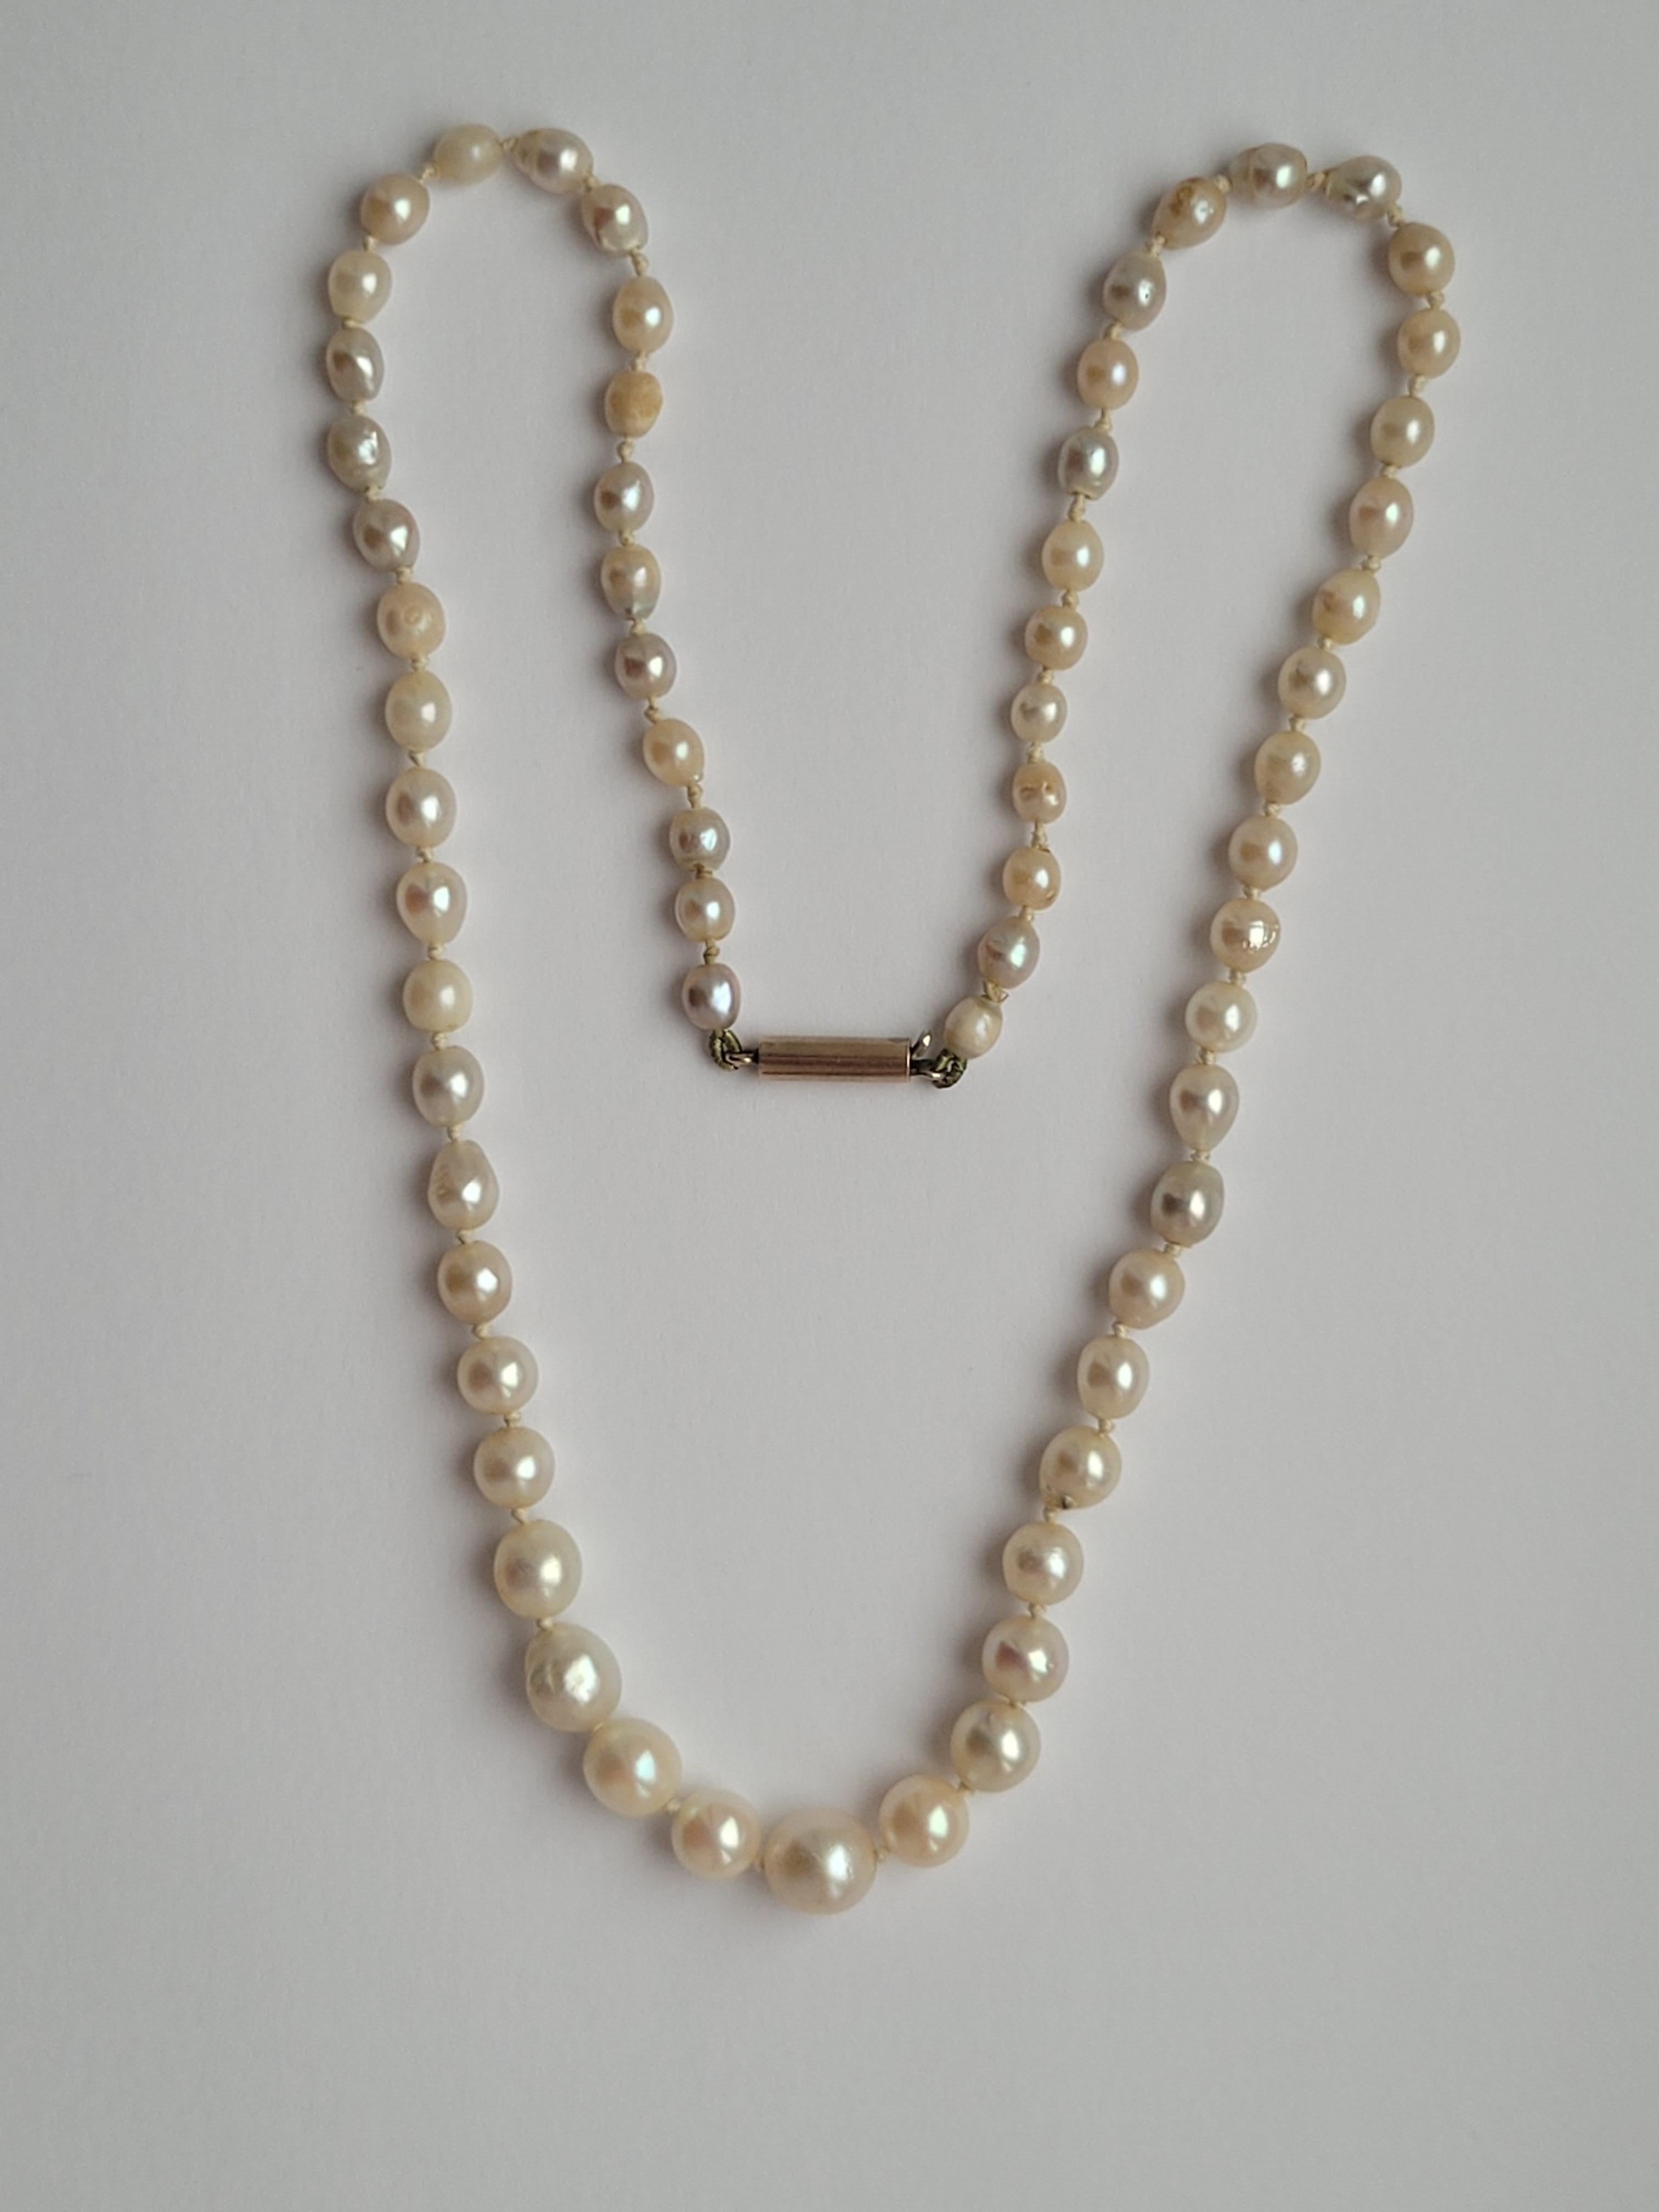 Antique collier de perles de culture du début des années 1900 avec un fermoir baril en or. Le lustre des perles varie de la crème au gris. Origine anglaise.
Perles de 4 mm à 7 mm.
Longueur totale incluant le fermoir 17